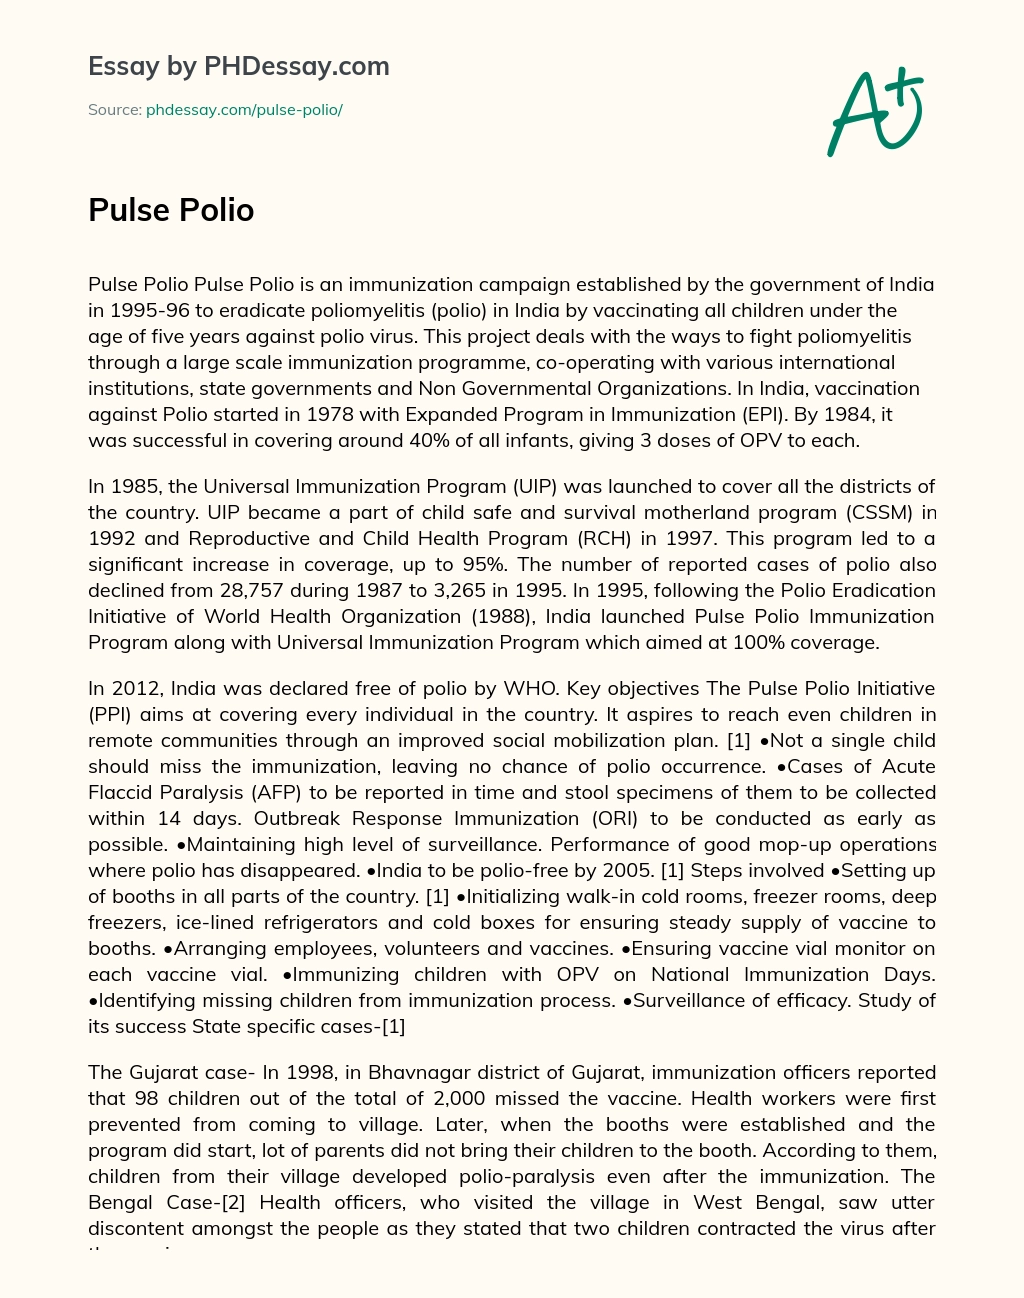 India’s Pulse Polio Campaign: Eradicating Polio Through Immunization essay